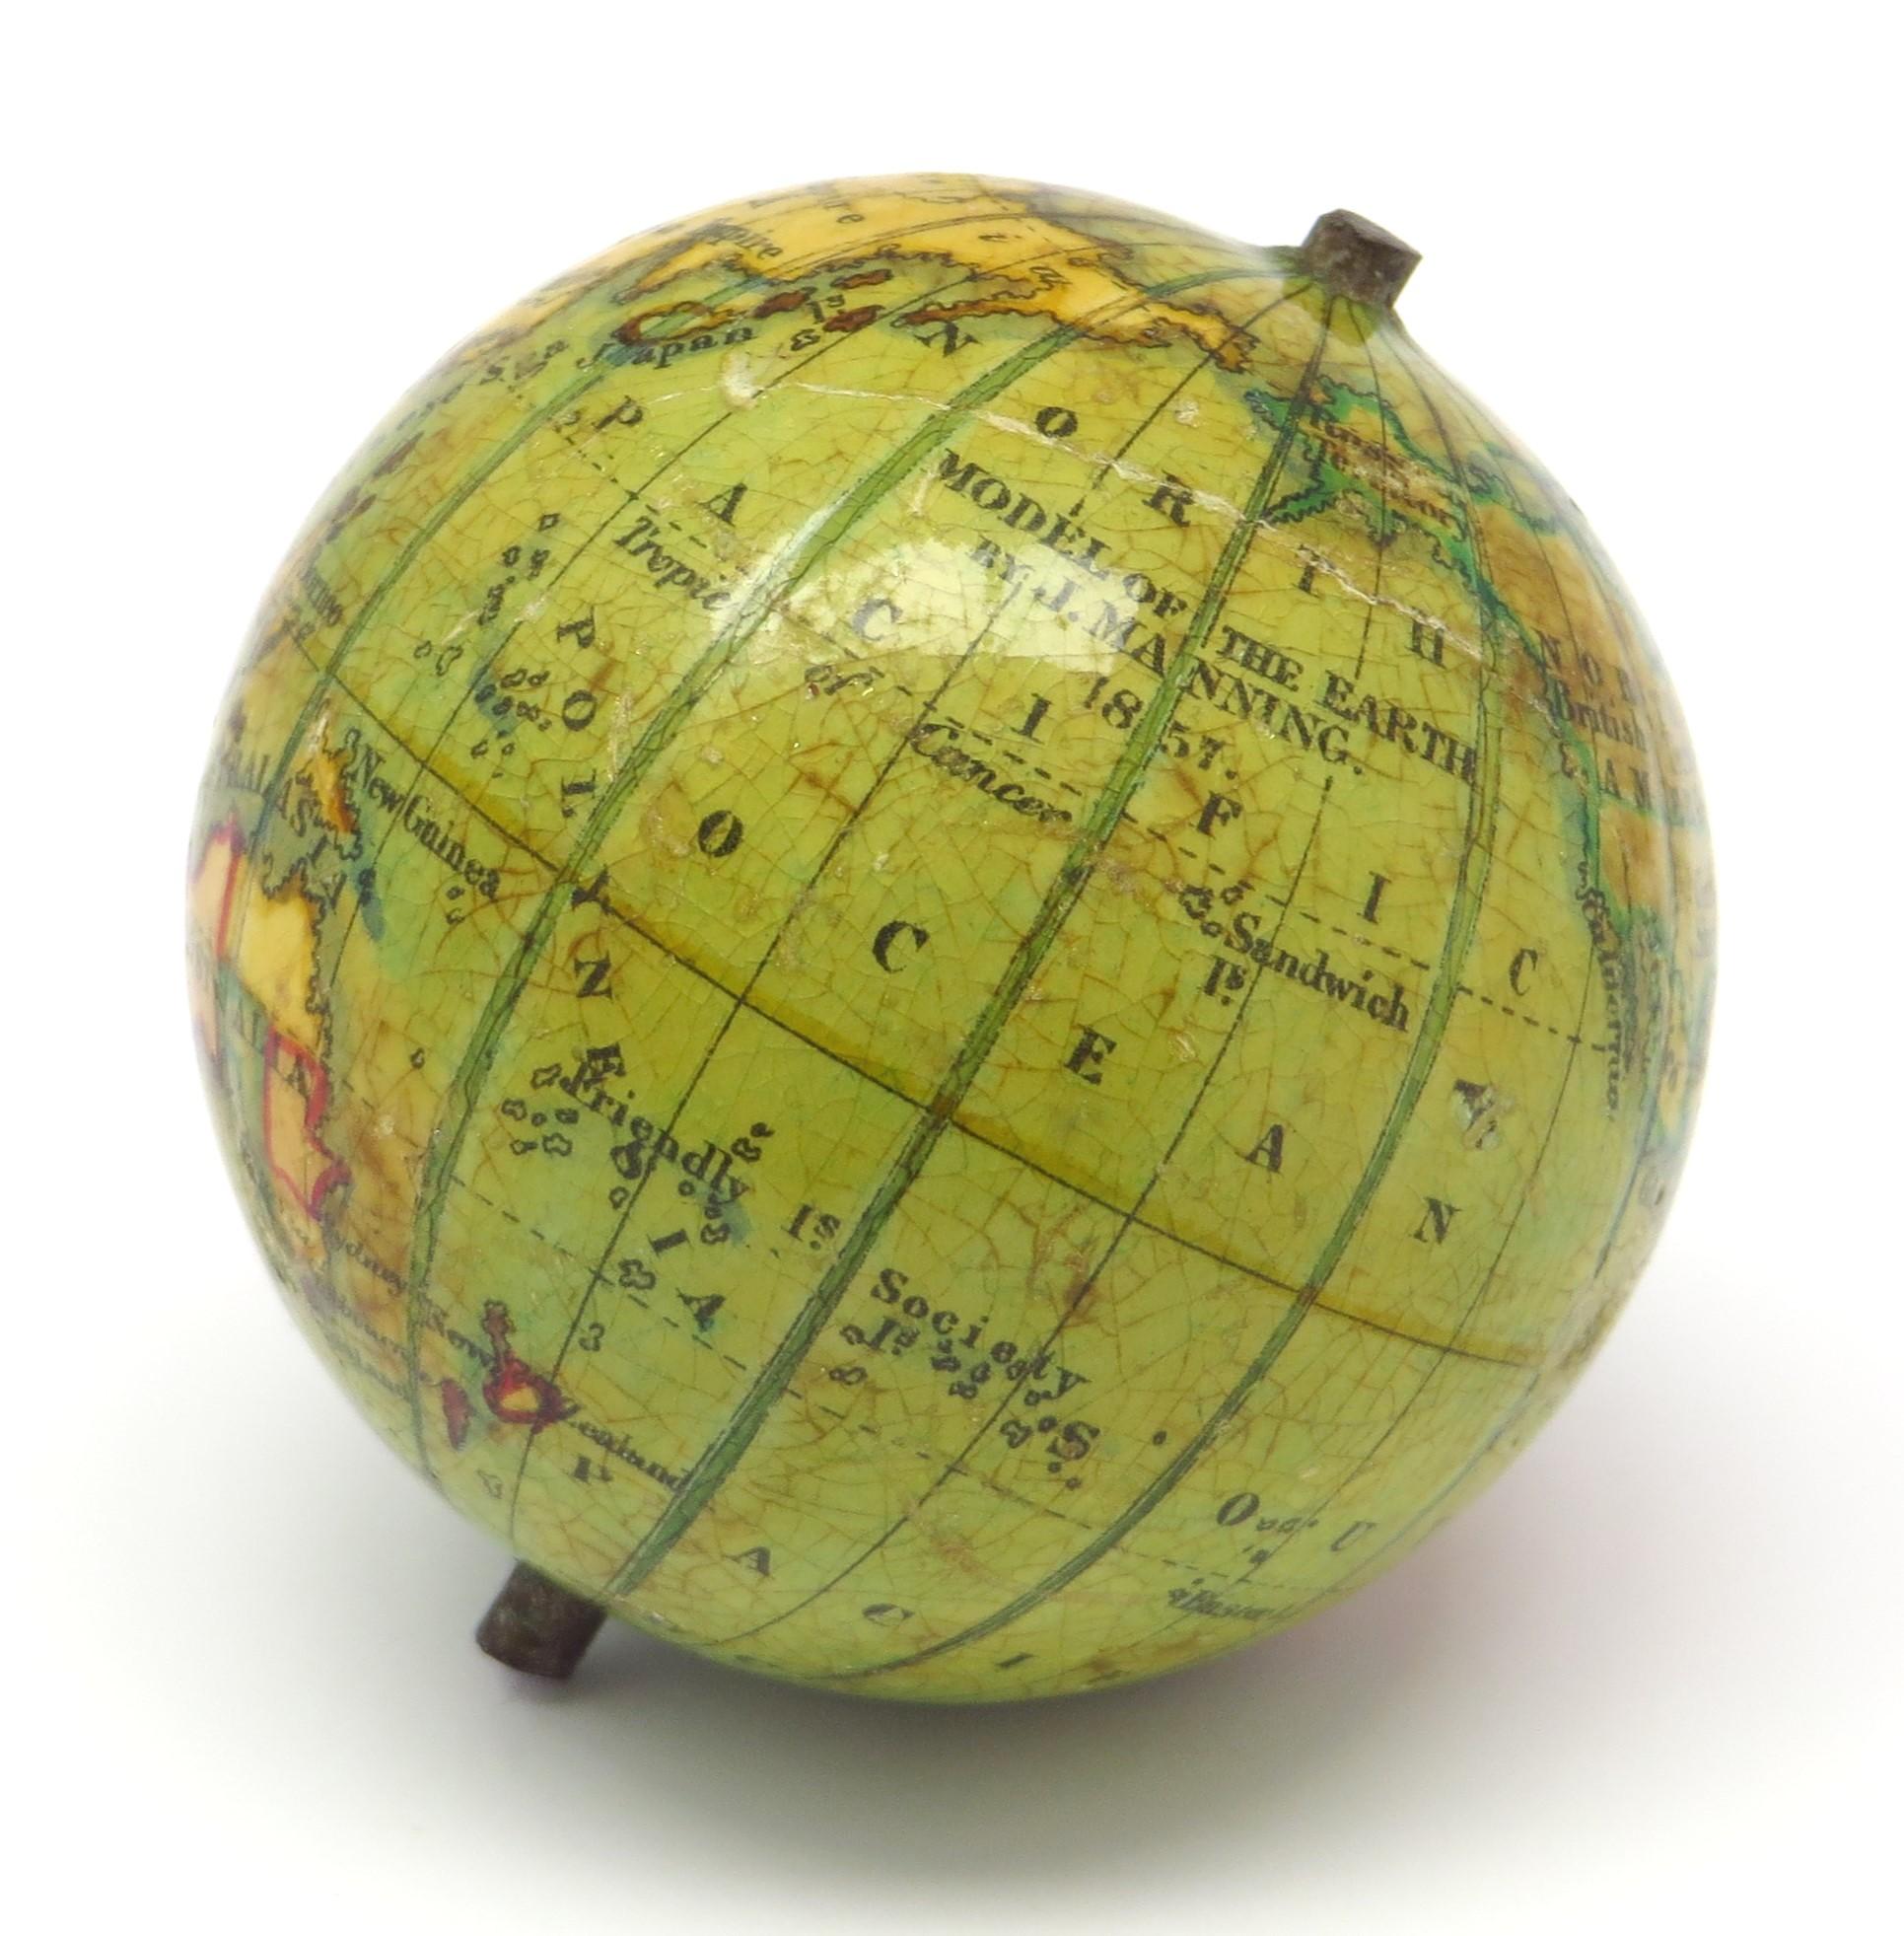 Terrestrischer Miniatur-Taschenglobus. Modell der Erde.

London, 1857 von J. Manning
Durchmesser von 1,75 Zoll / 4,5 cm.

Dieser hübsche Miniatur-Erdglobus besteht aus zwölf in Kupfer gravierten, handkolorierten Zwickeln auf einem Holzsockel. Die